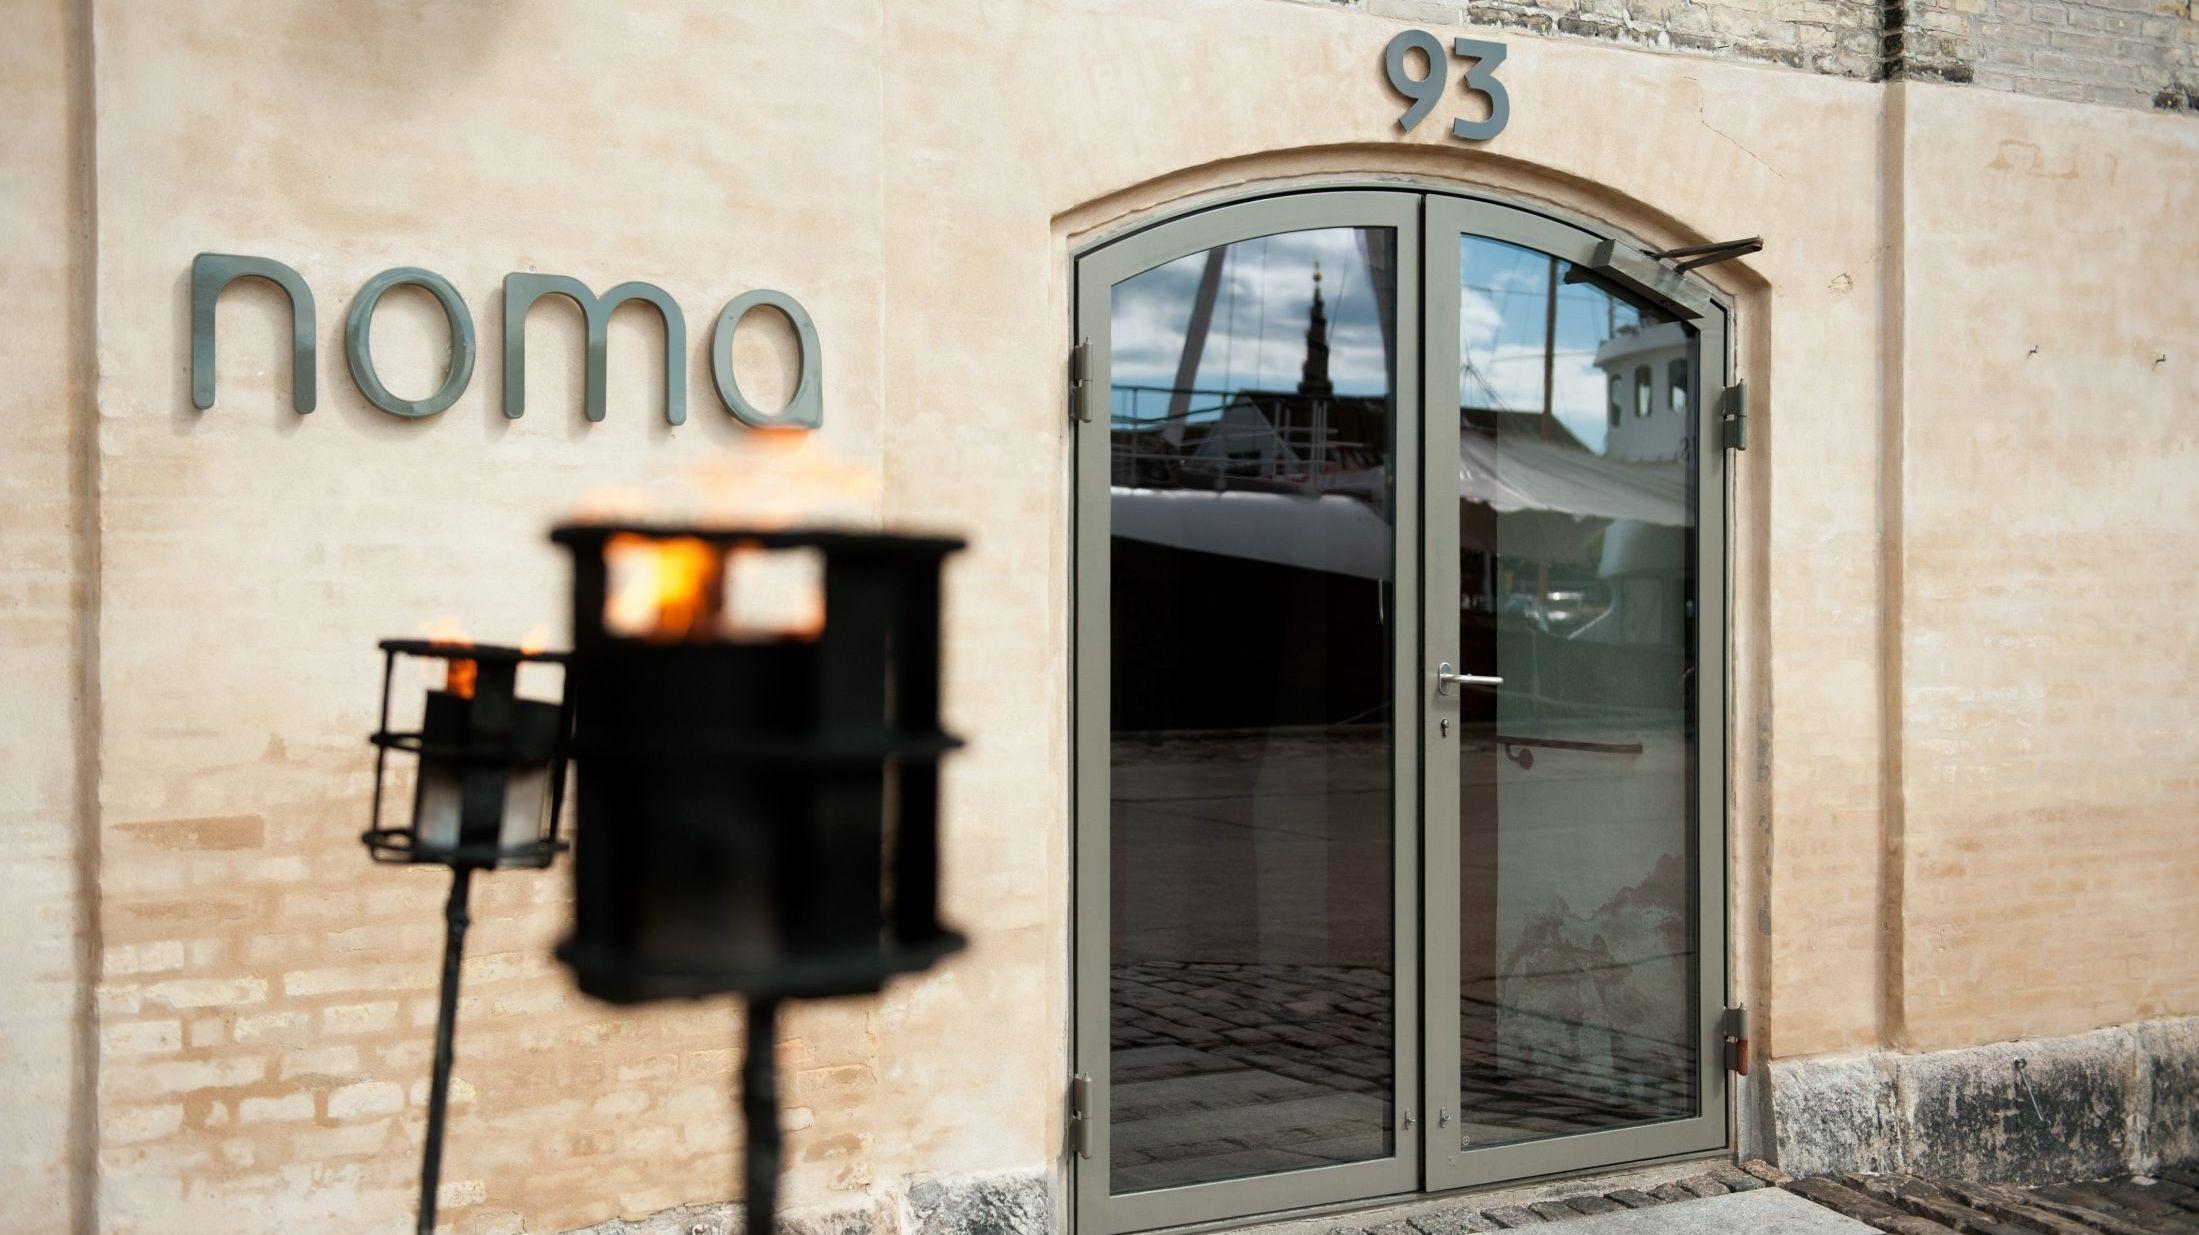 TILBAKE PÅ TOPP: Stjernerestauranten Noma i København hadde tittelen som verdens beste restaurant fra 2010-2012, men måtte vike ned på listen for den katalanske restauranten El Cellar De Can Roca i fjor. Navnet Noma står for «nordisk» og «mat». Foto: Johannes Jansson/VG